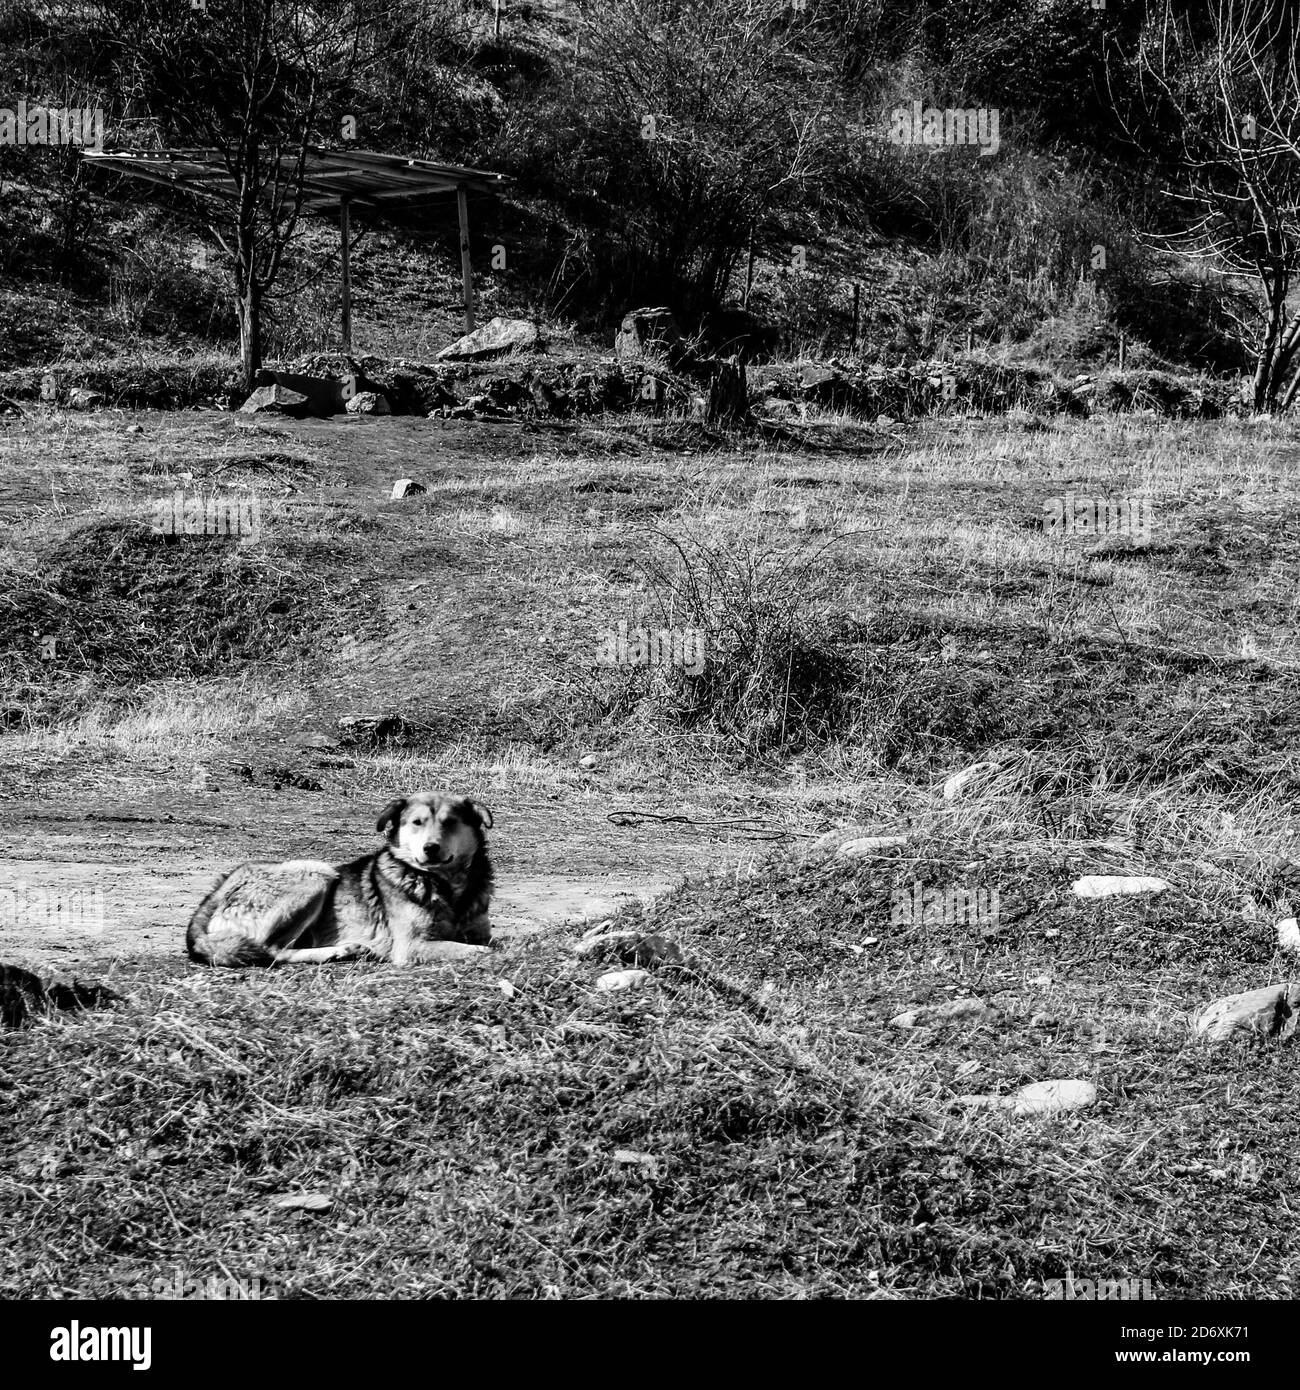 Prise de vue en niveaux de gris d'un chien dans le paysage abandonné Banque D'Images